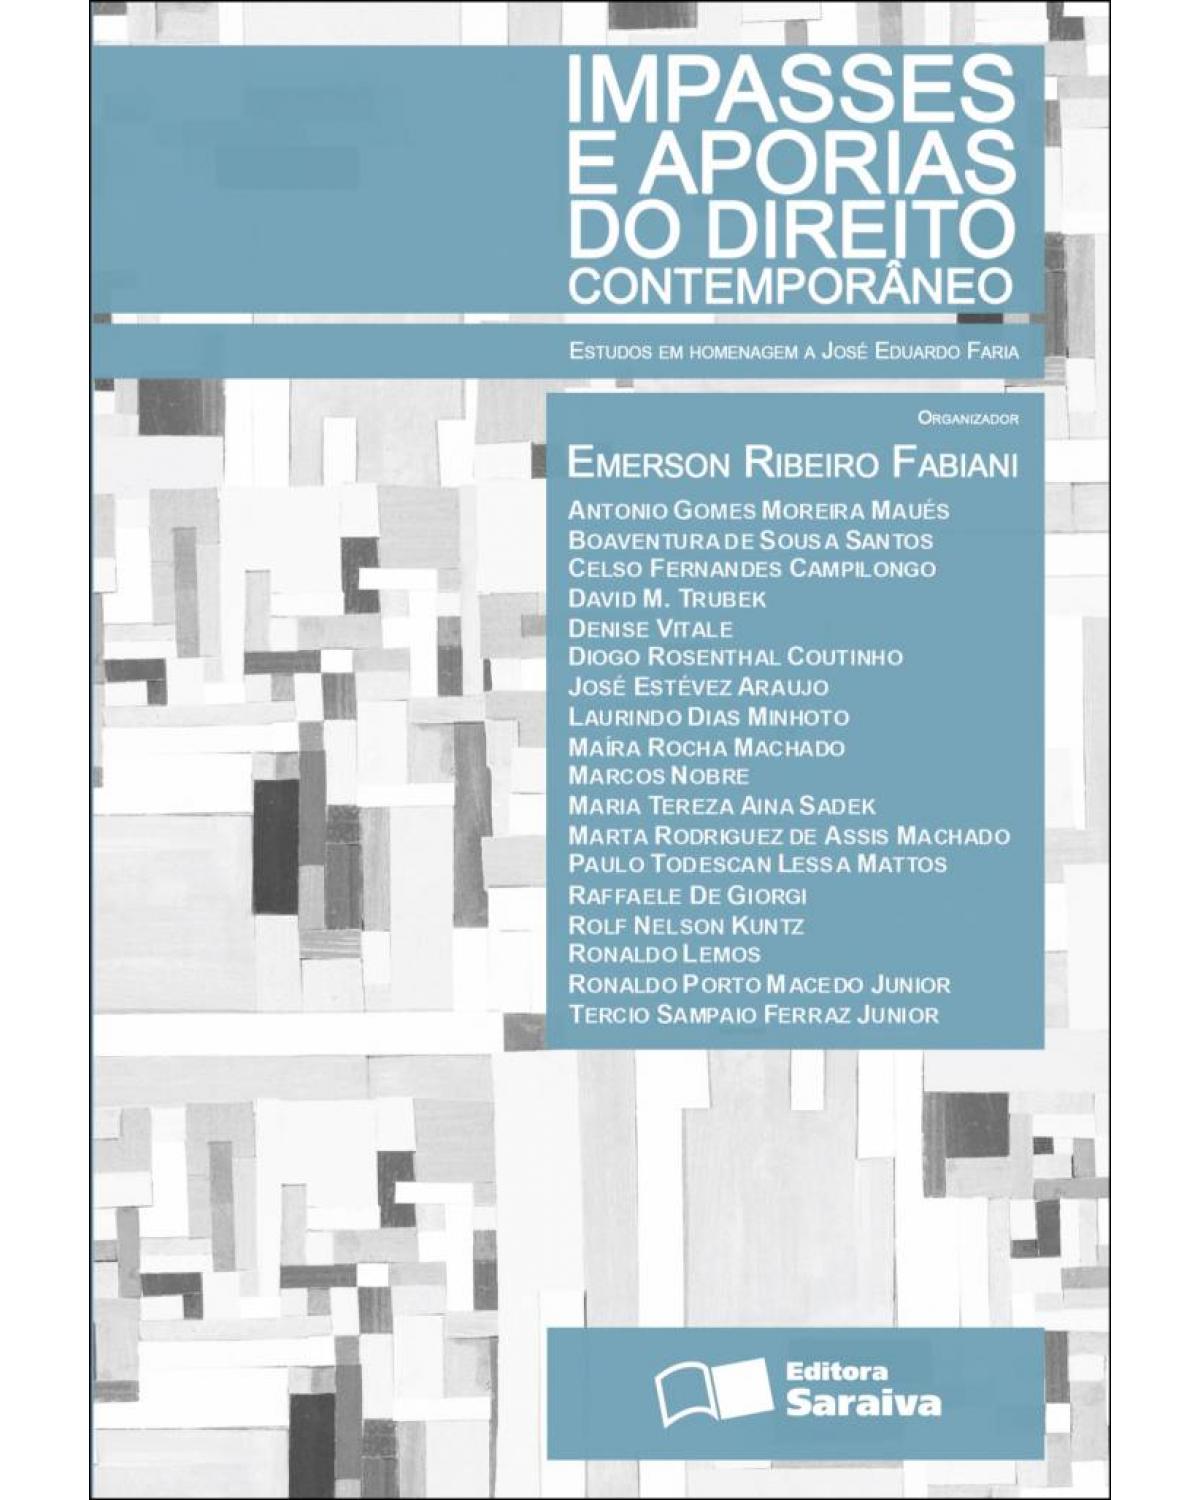 Impasses e aporias do direito contemporâneo - estudos em homenagem a José Eduardo Faria - 1ª Edição | 2011